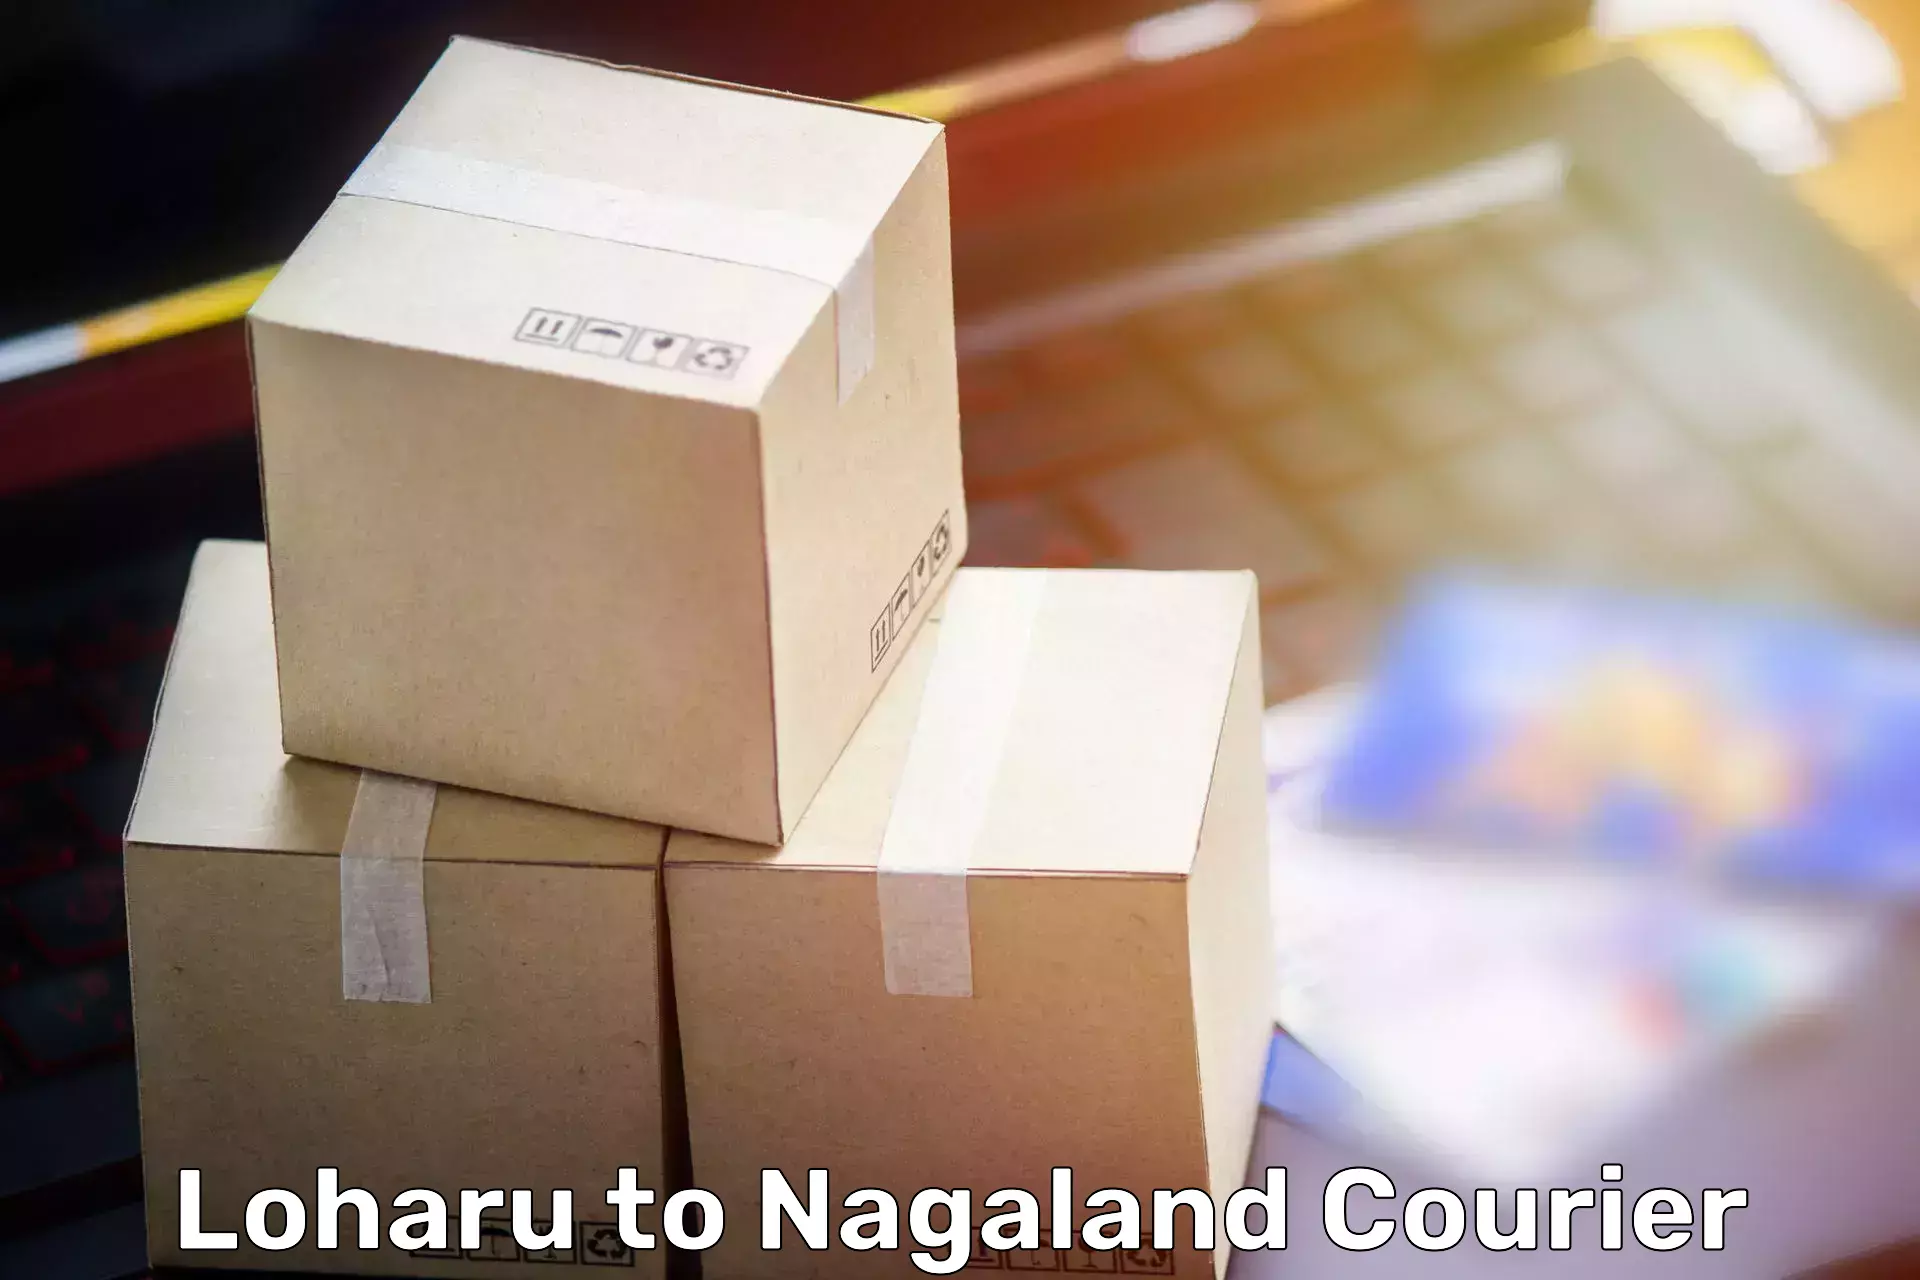 Home goods moving company Loharu to NIT Nagaland